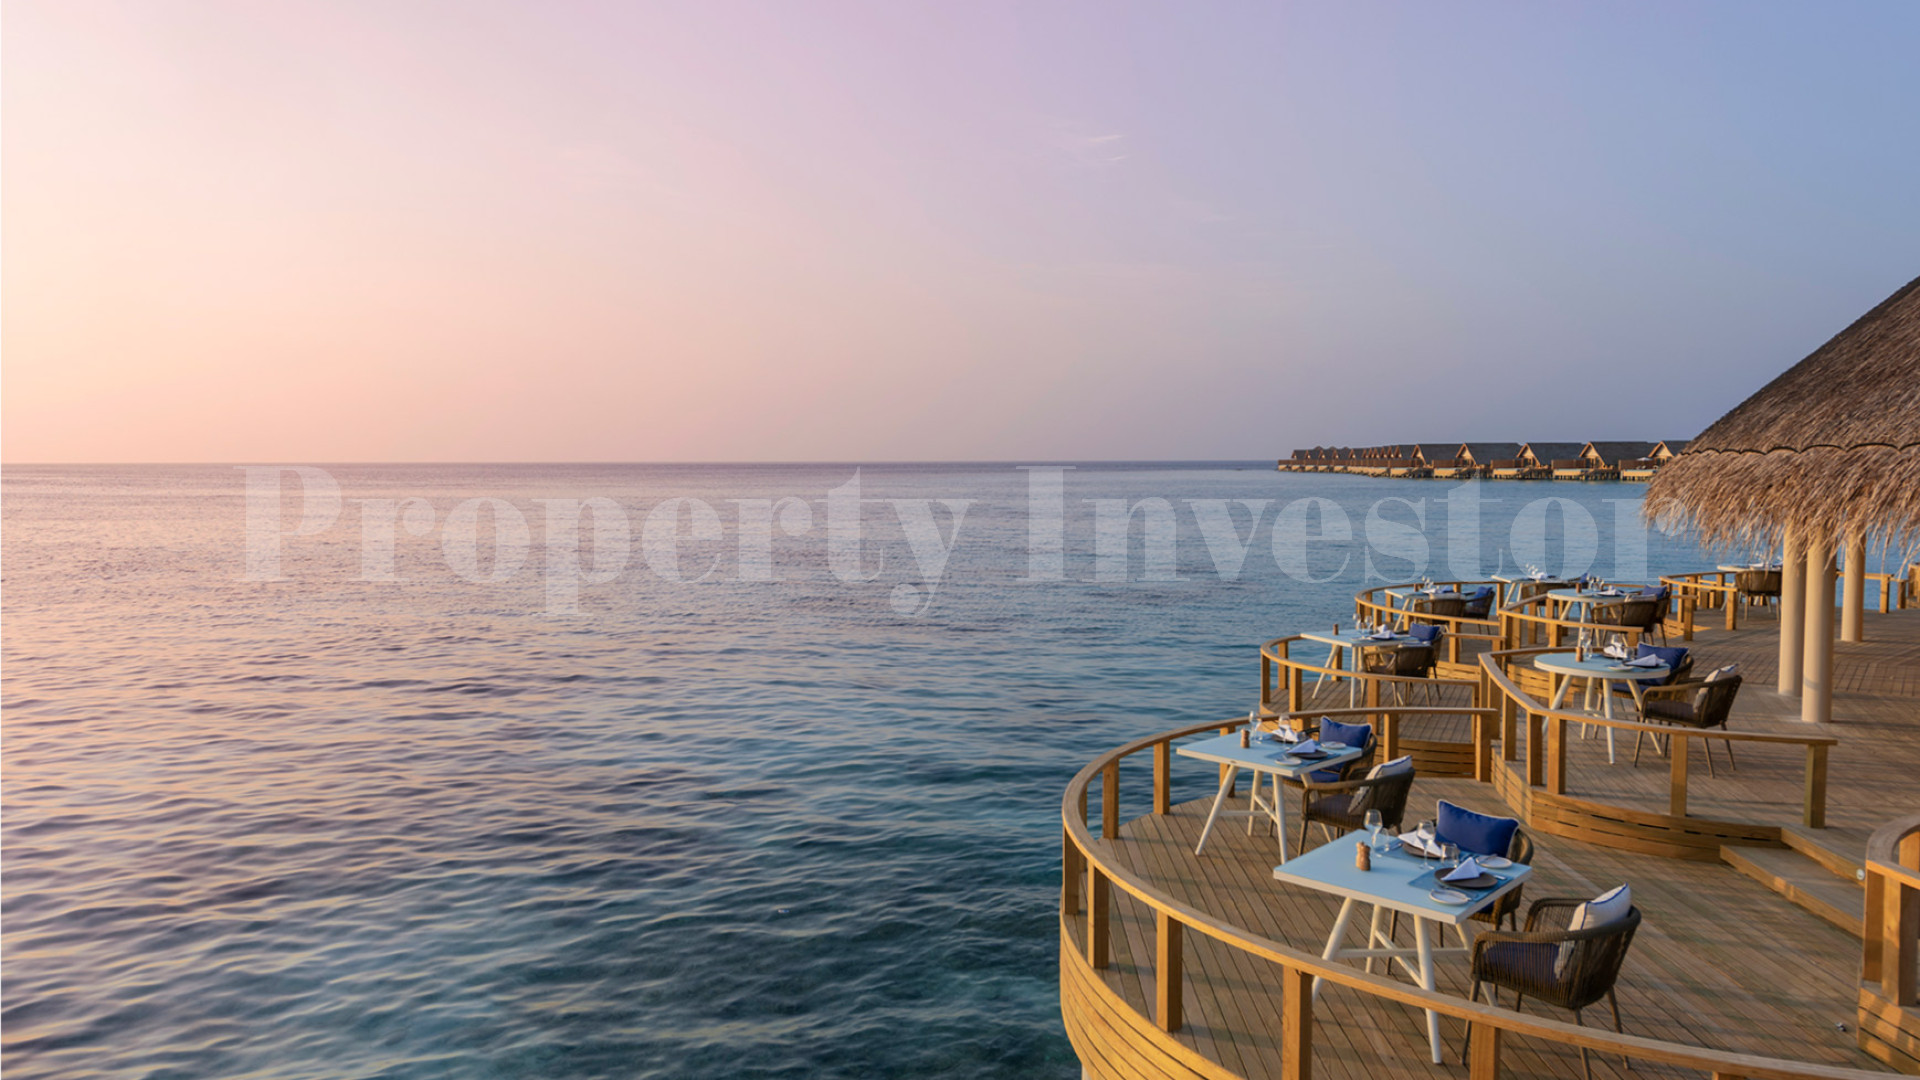 Популярный 5* роскошный островной отель на 80 номеров на Мальдивах